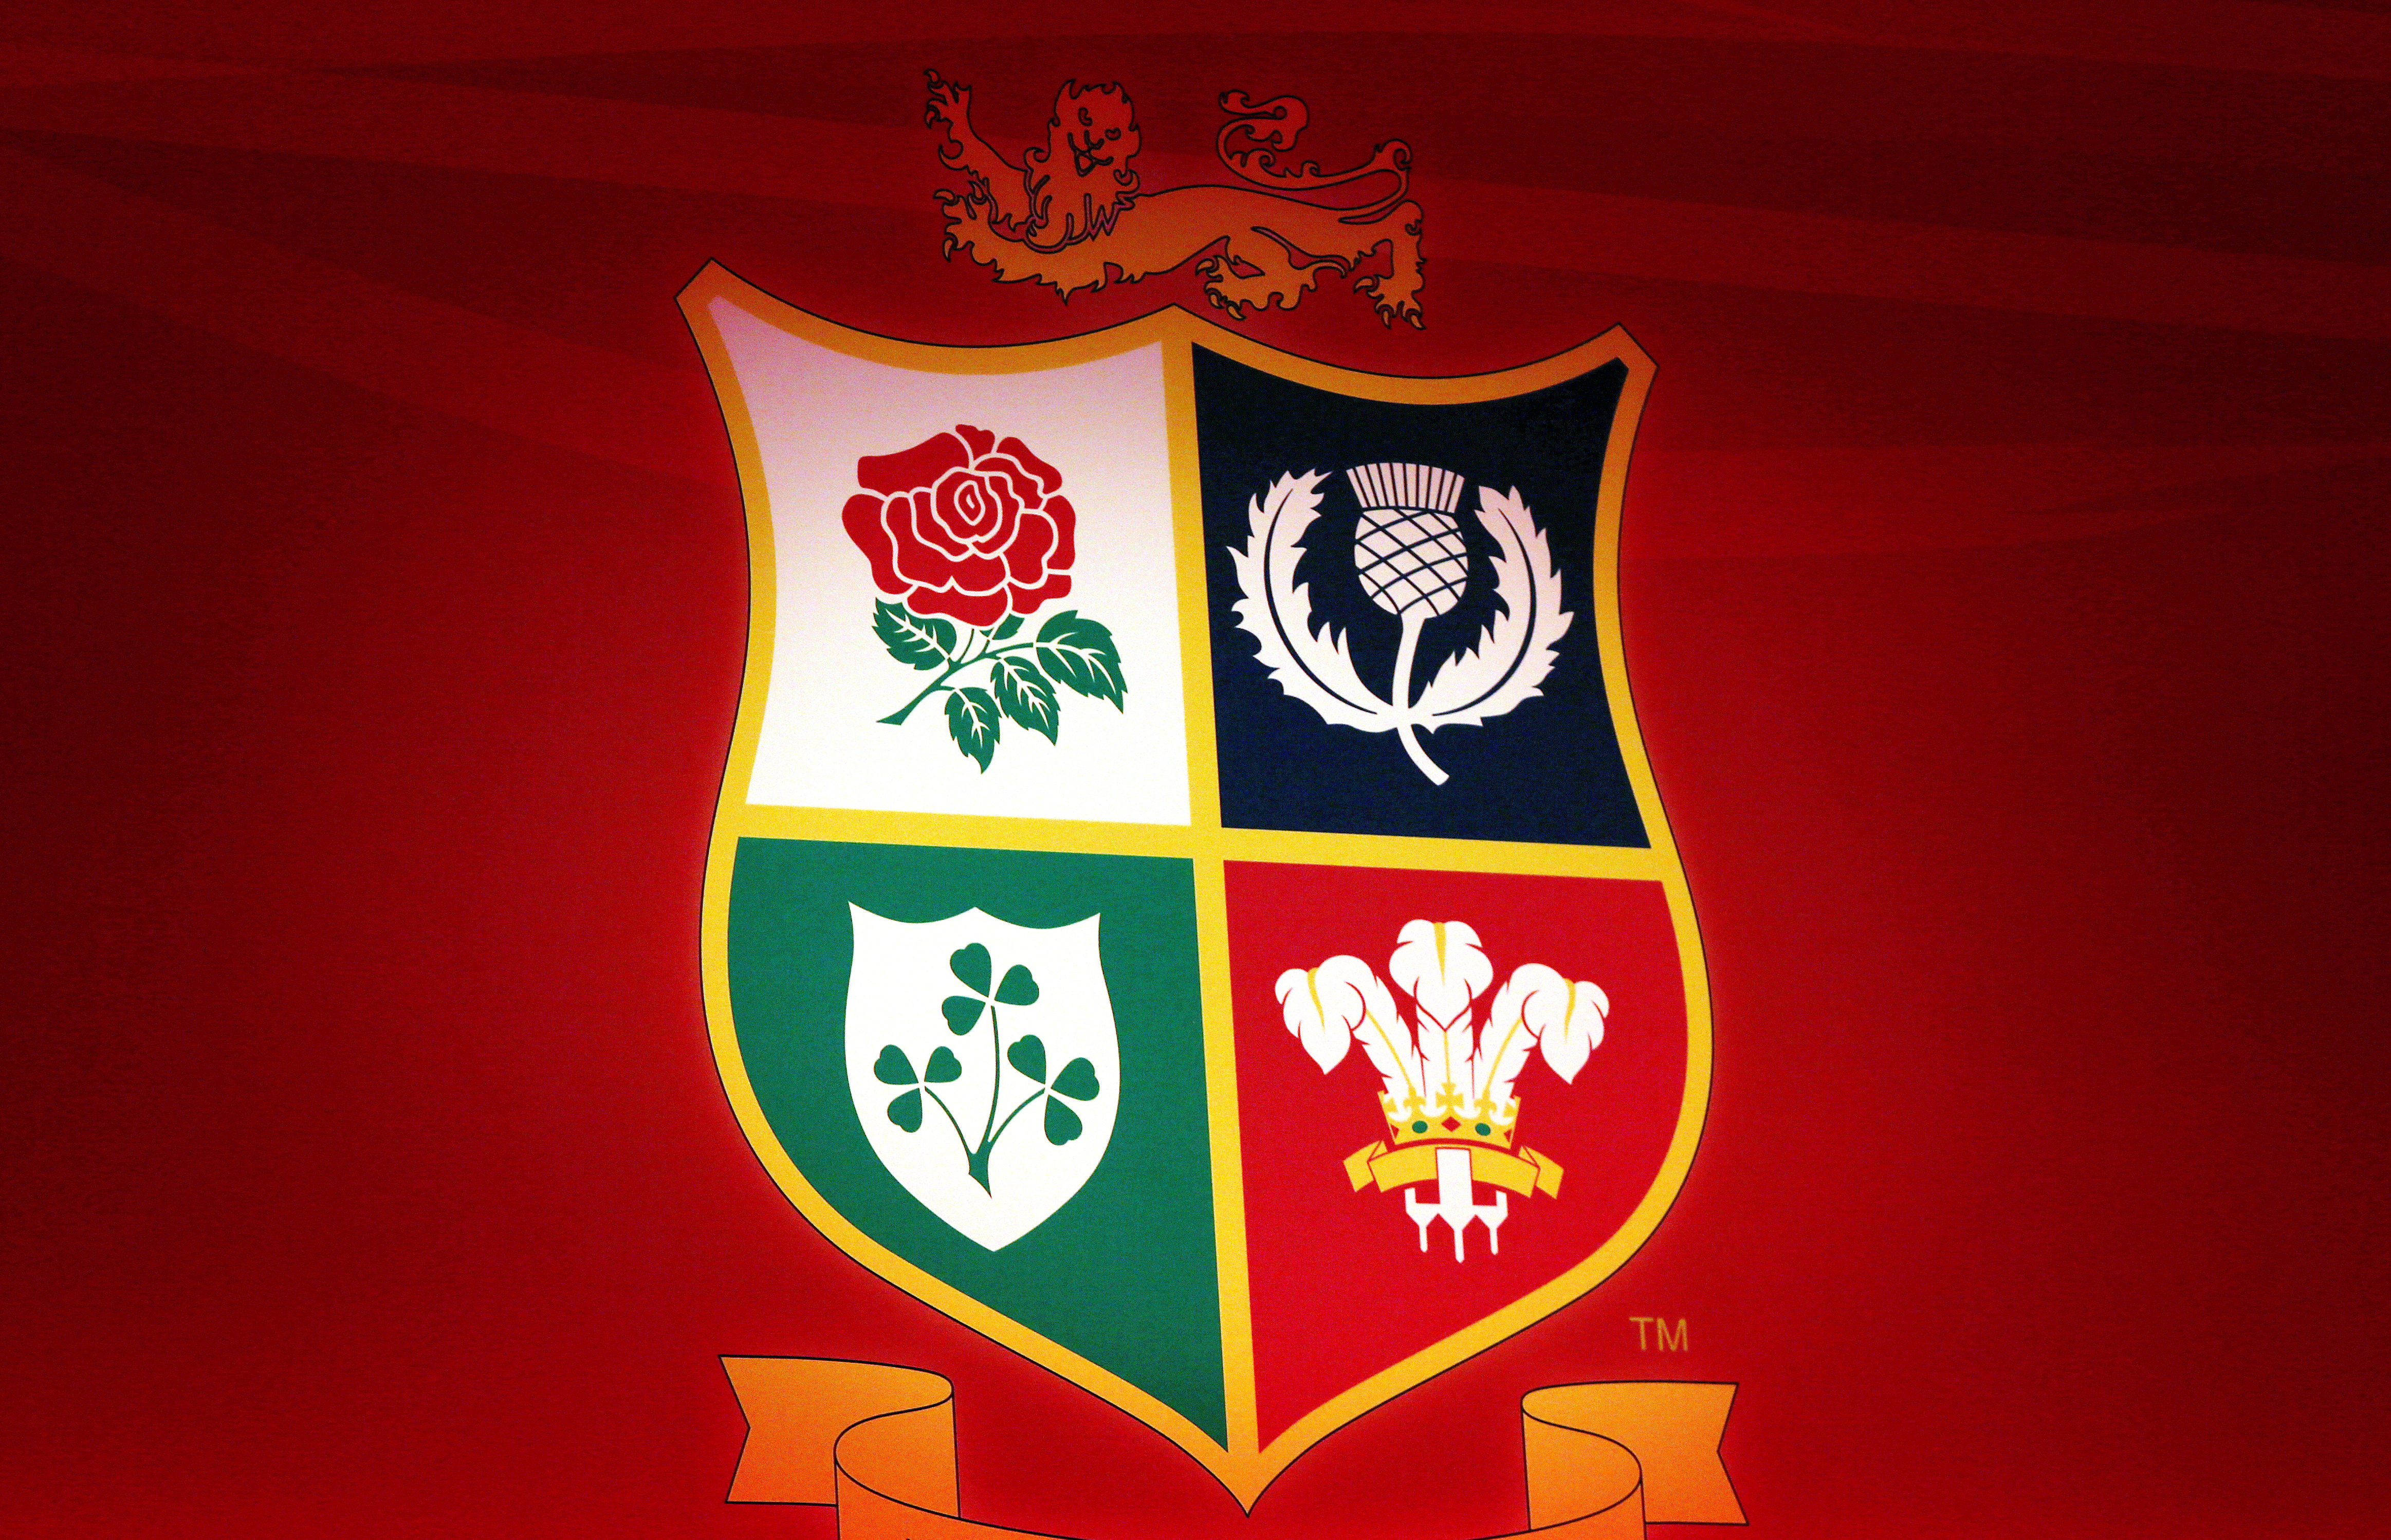 The British and Irish Lions logo. 